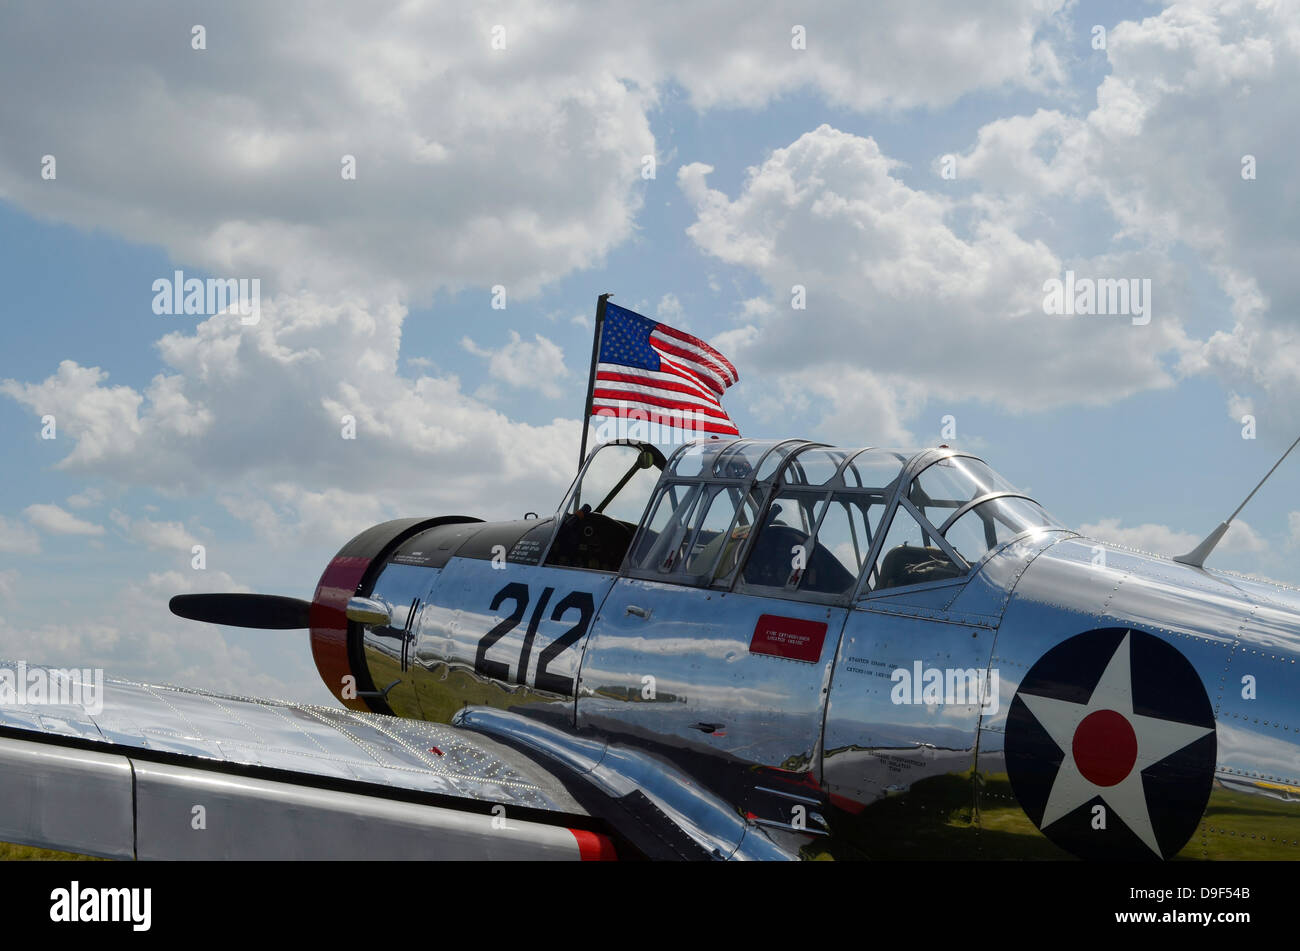 Un BT-13 Valiant trainer aeromobili con bandiera americana. Foto Stock